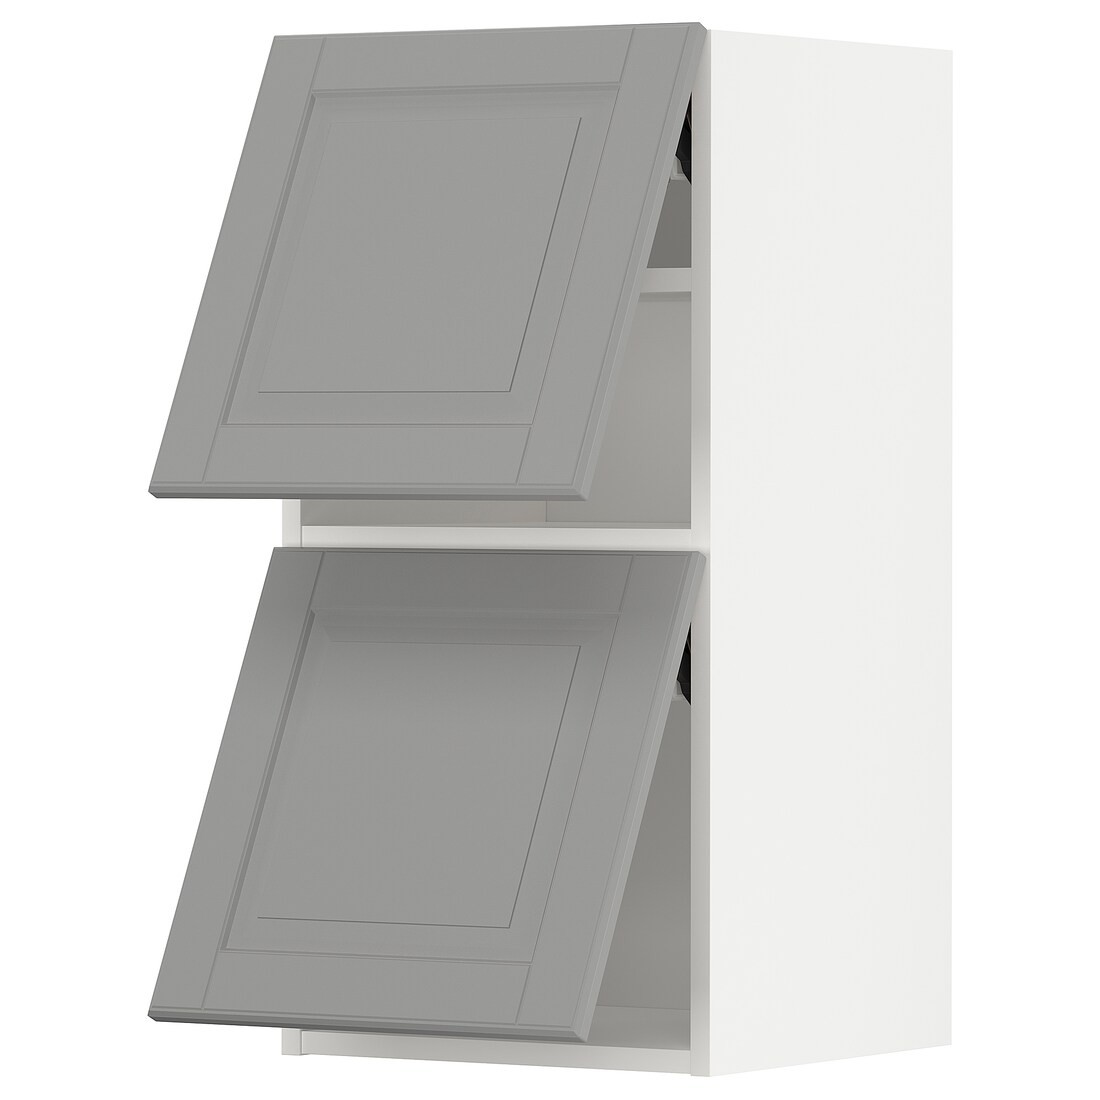 METOD МЕТОД Навесной горизонтальный шкаф / 2 двери, белый / Bodbyn серый, 40x80 см